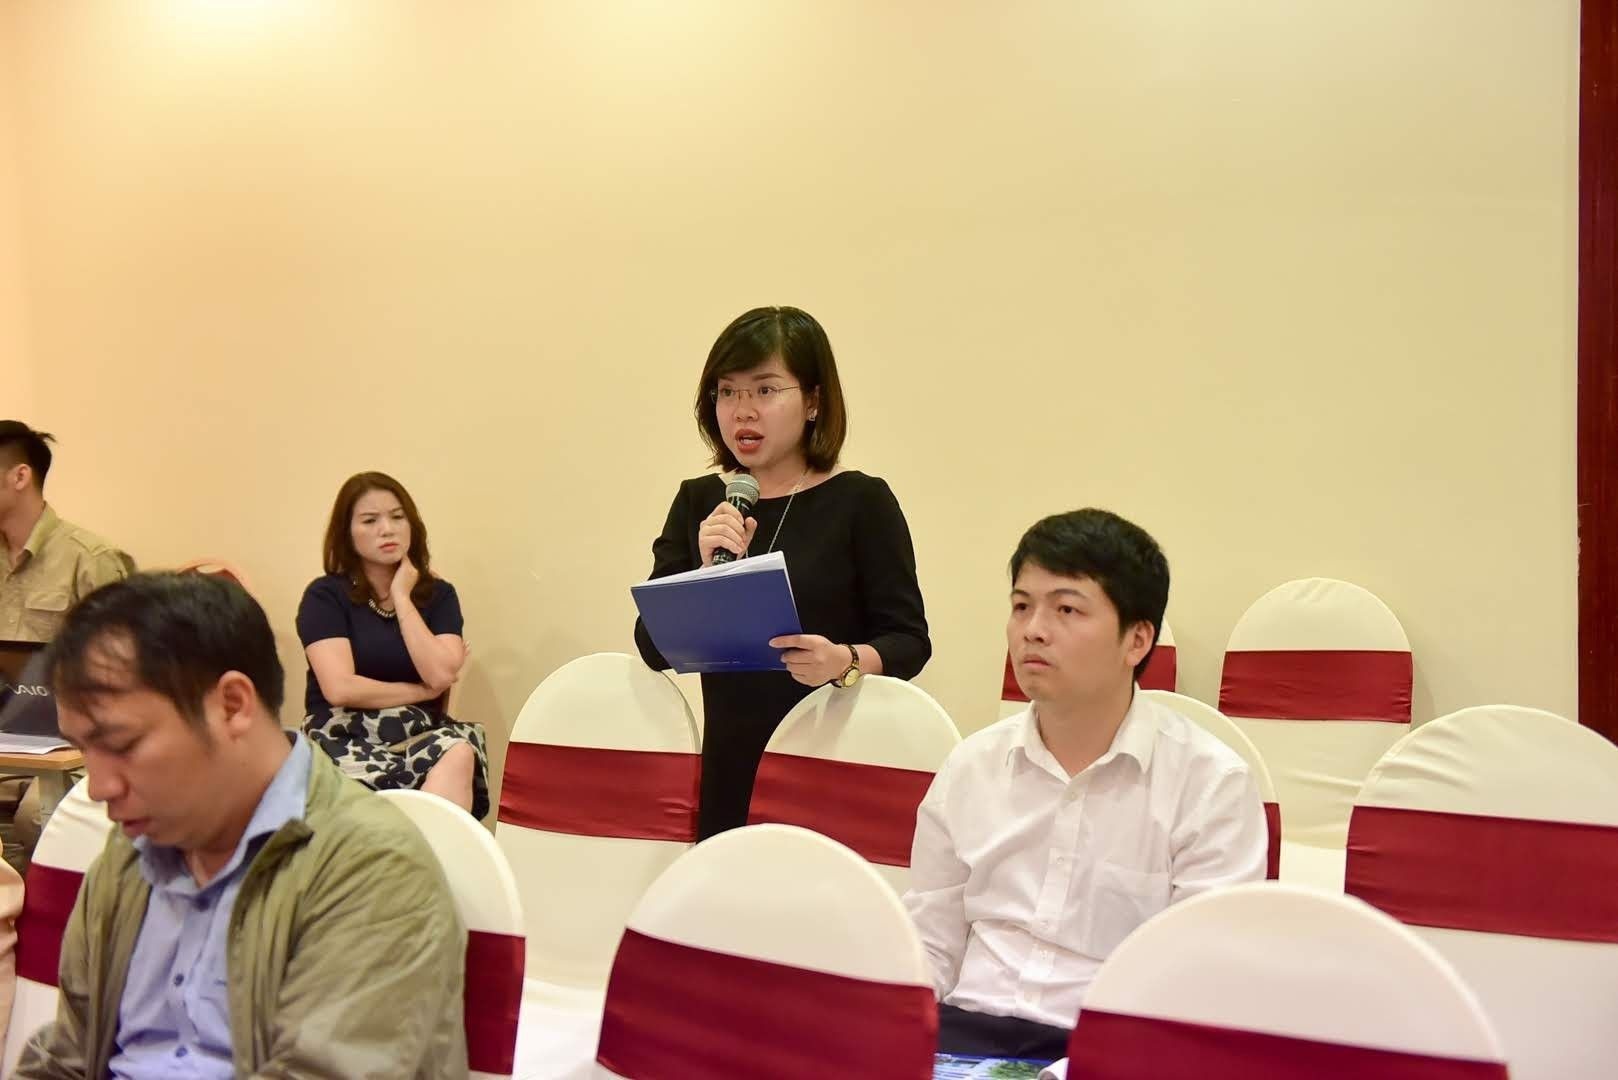  PV Mai Quyên- Đài truyền hình Việt Nam đặt câu hỏi tới Ban tổ chức. 